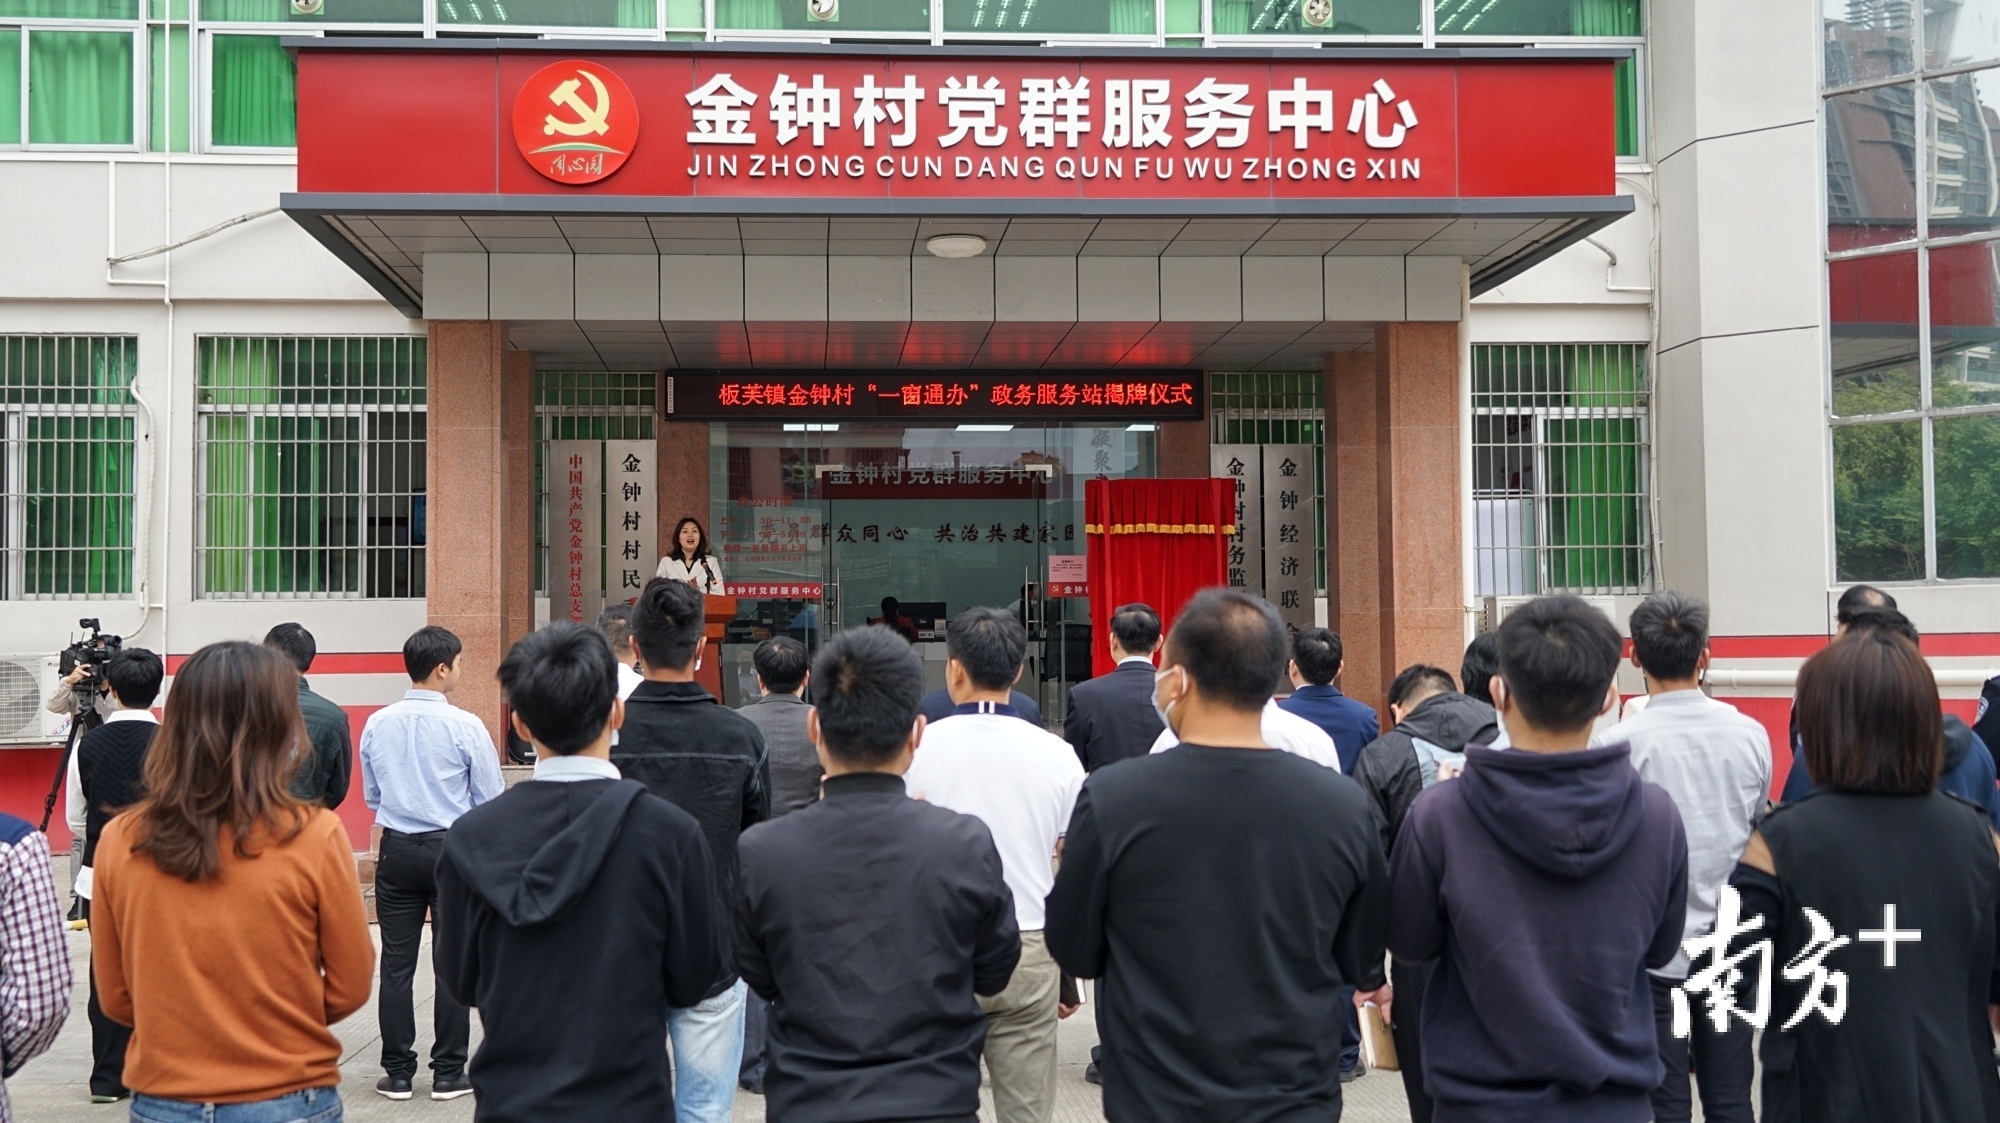 板芙镇金钟村“一窗通办”政务服务站揭牌仪式。